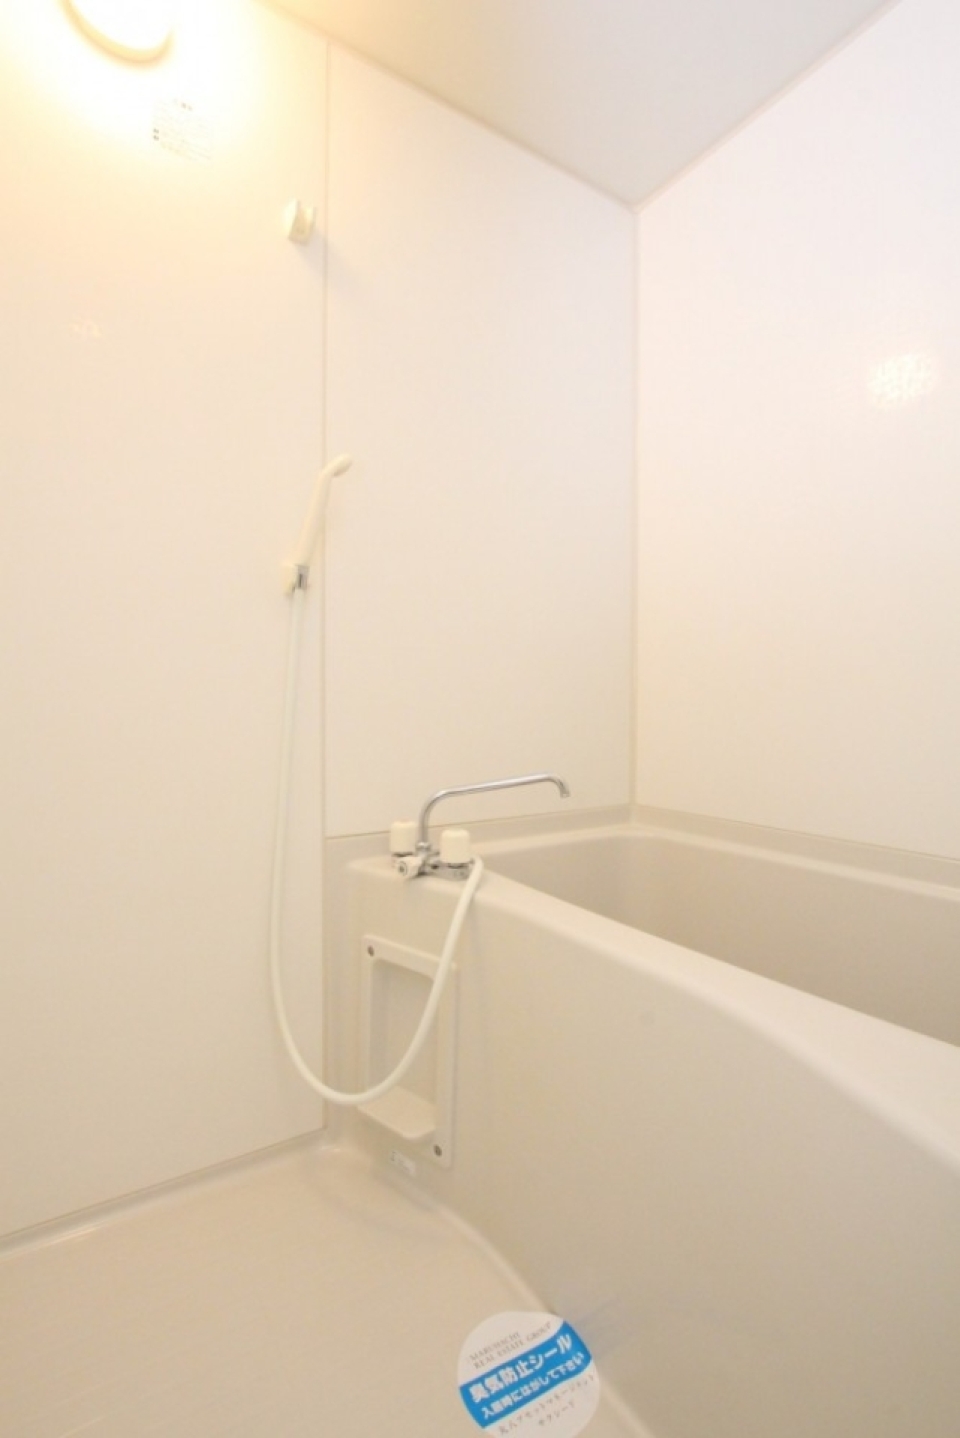 浴室は、白くてシンプルなデザイン。